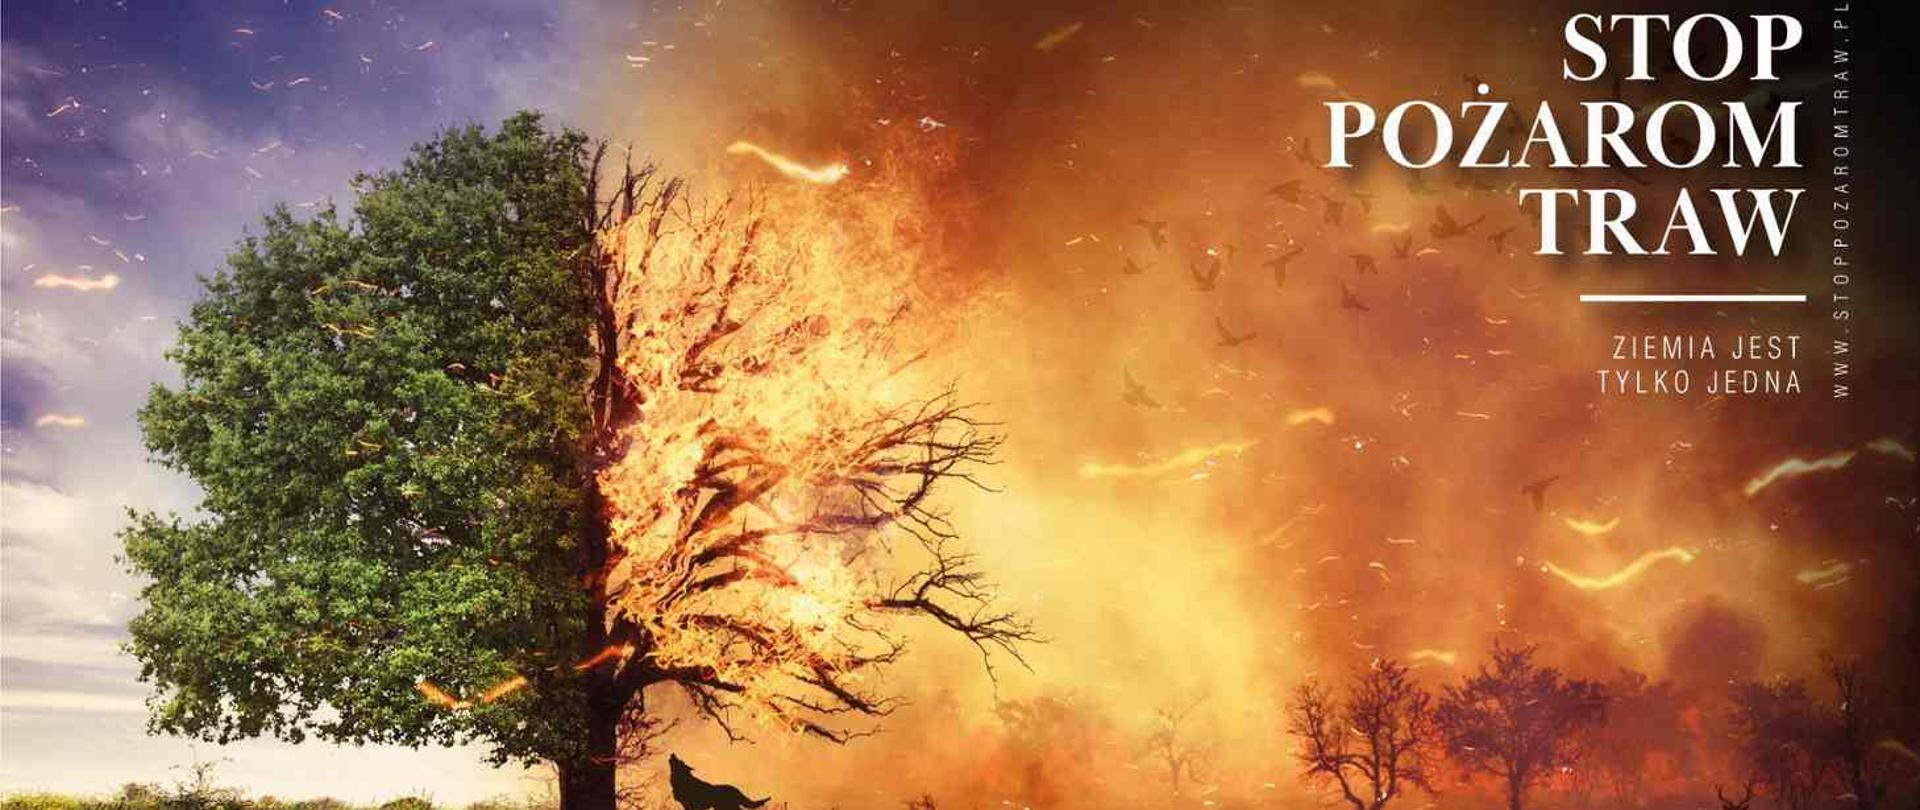 Plakat przedstawiający pożar łąki obejmujący już połowę rosnącego drzewa.